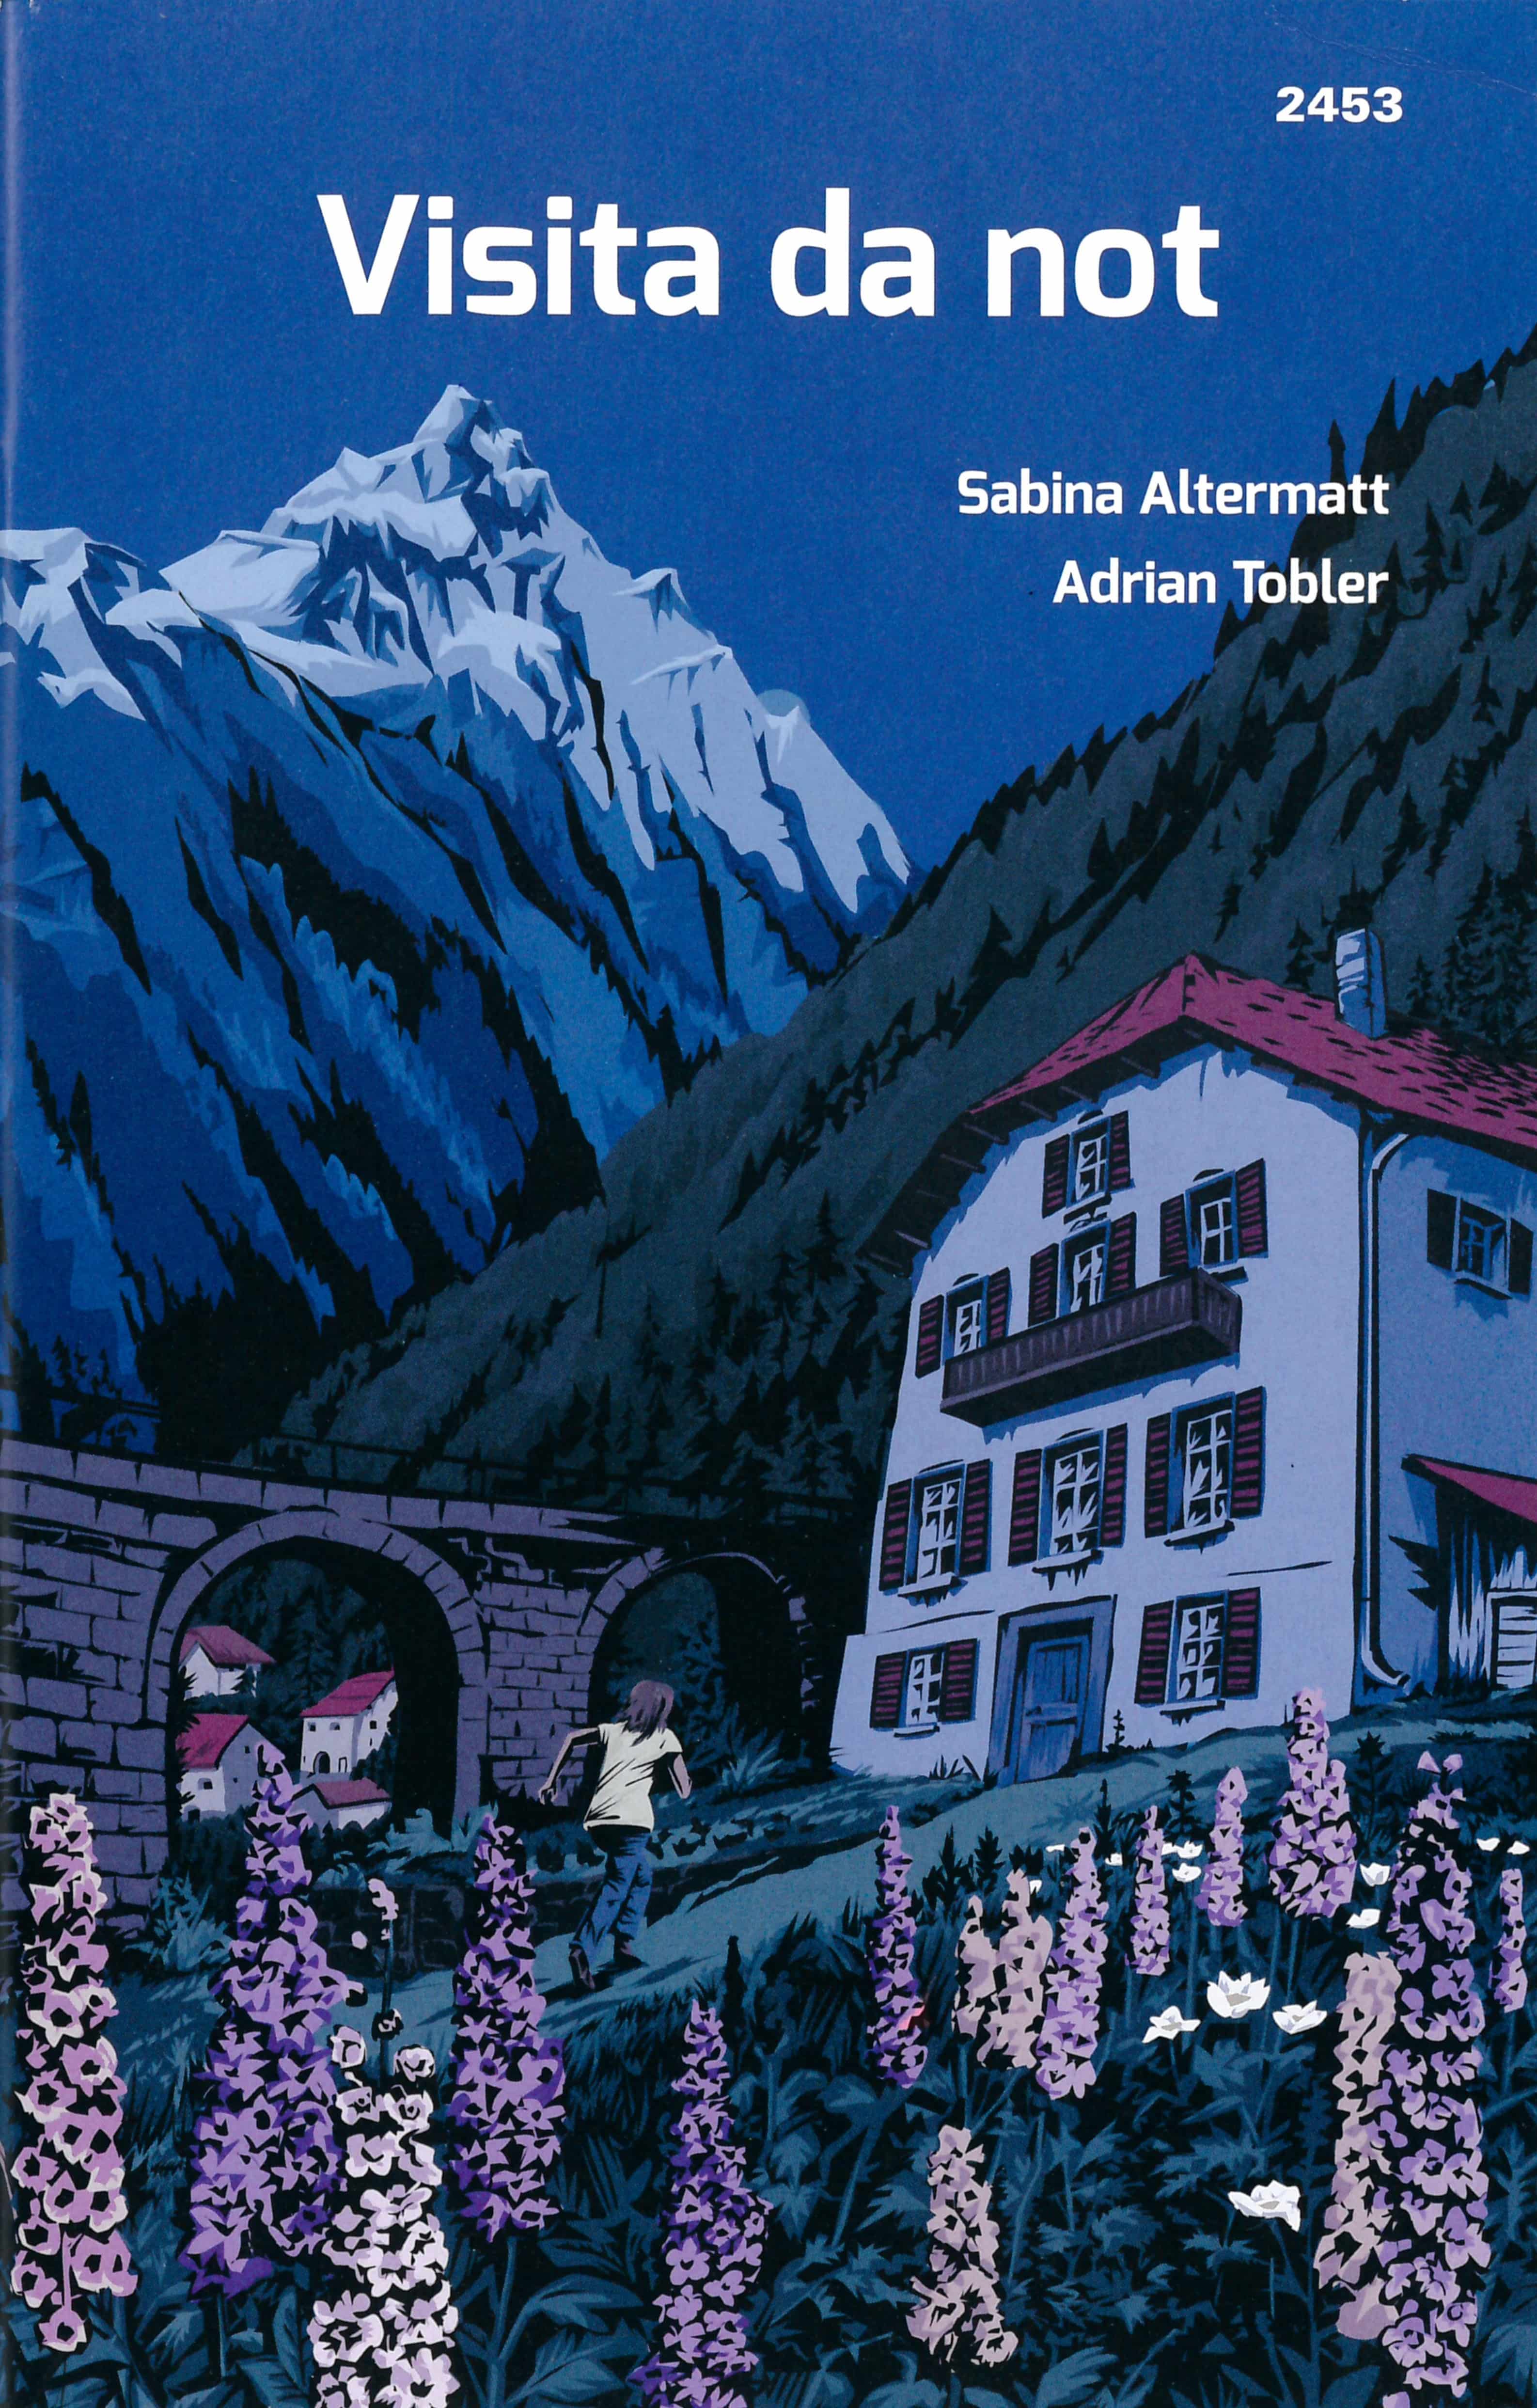 Visita da not (Vallader), ein Jugendbuch von Sabina Altermatt, Illustration von Adrian Tobler, SJW Verlag, Krimi